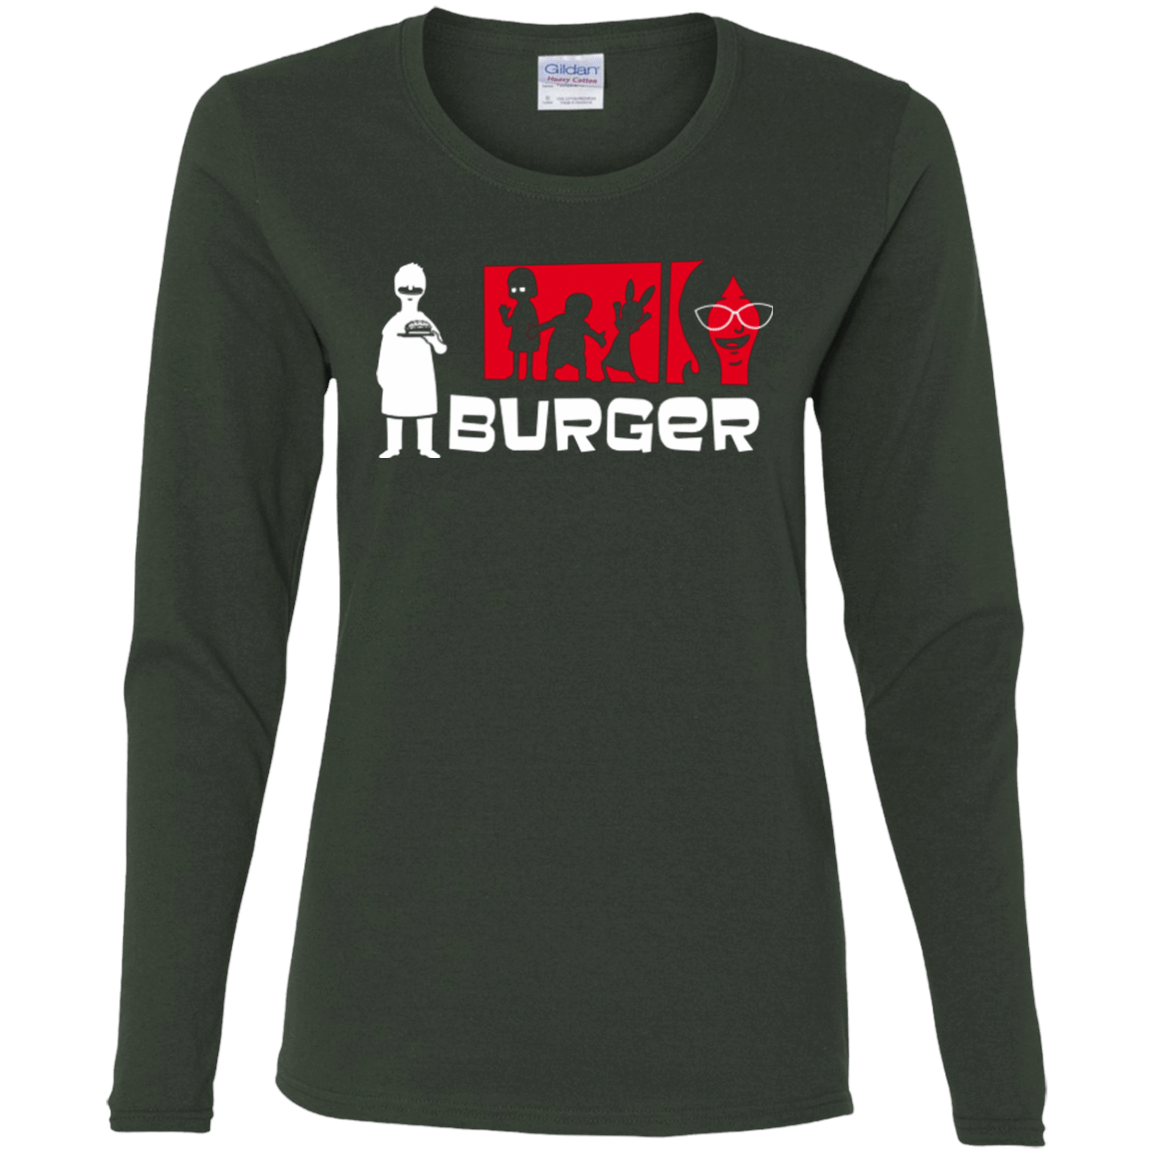 T-Shirts Forest / S Burger Women's Long Sleeve T-Shirt